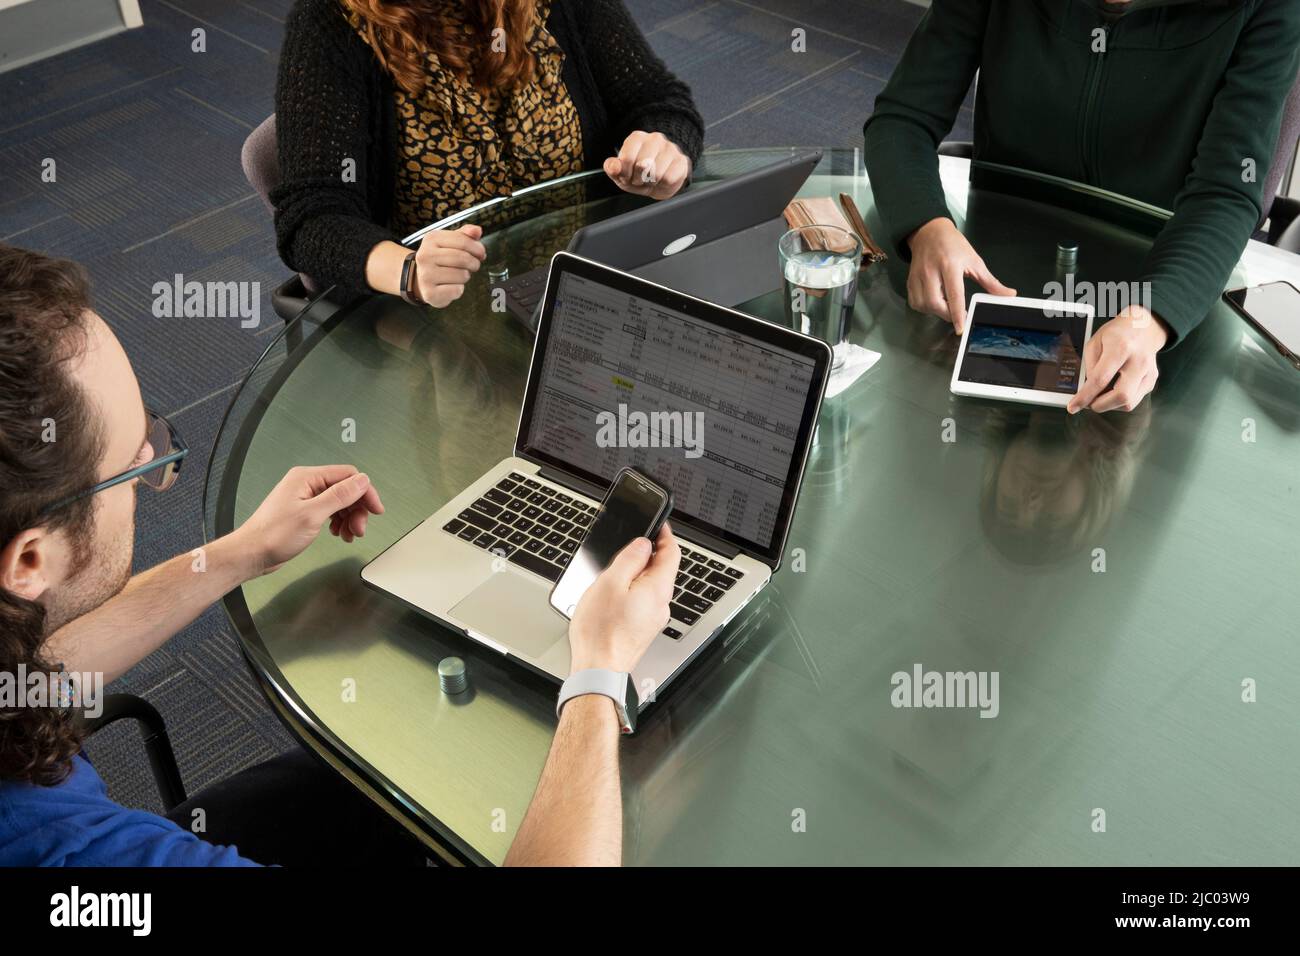 Aufnahme von drei Personen auf Laptops und Tablets während eines Meetings. Stockfoto